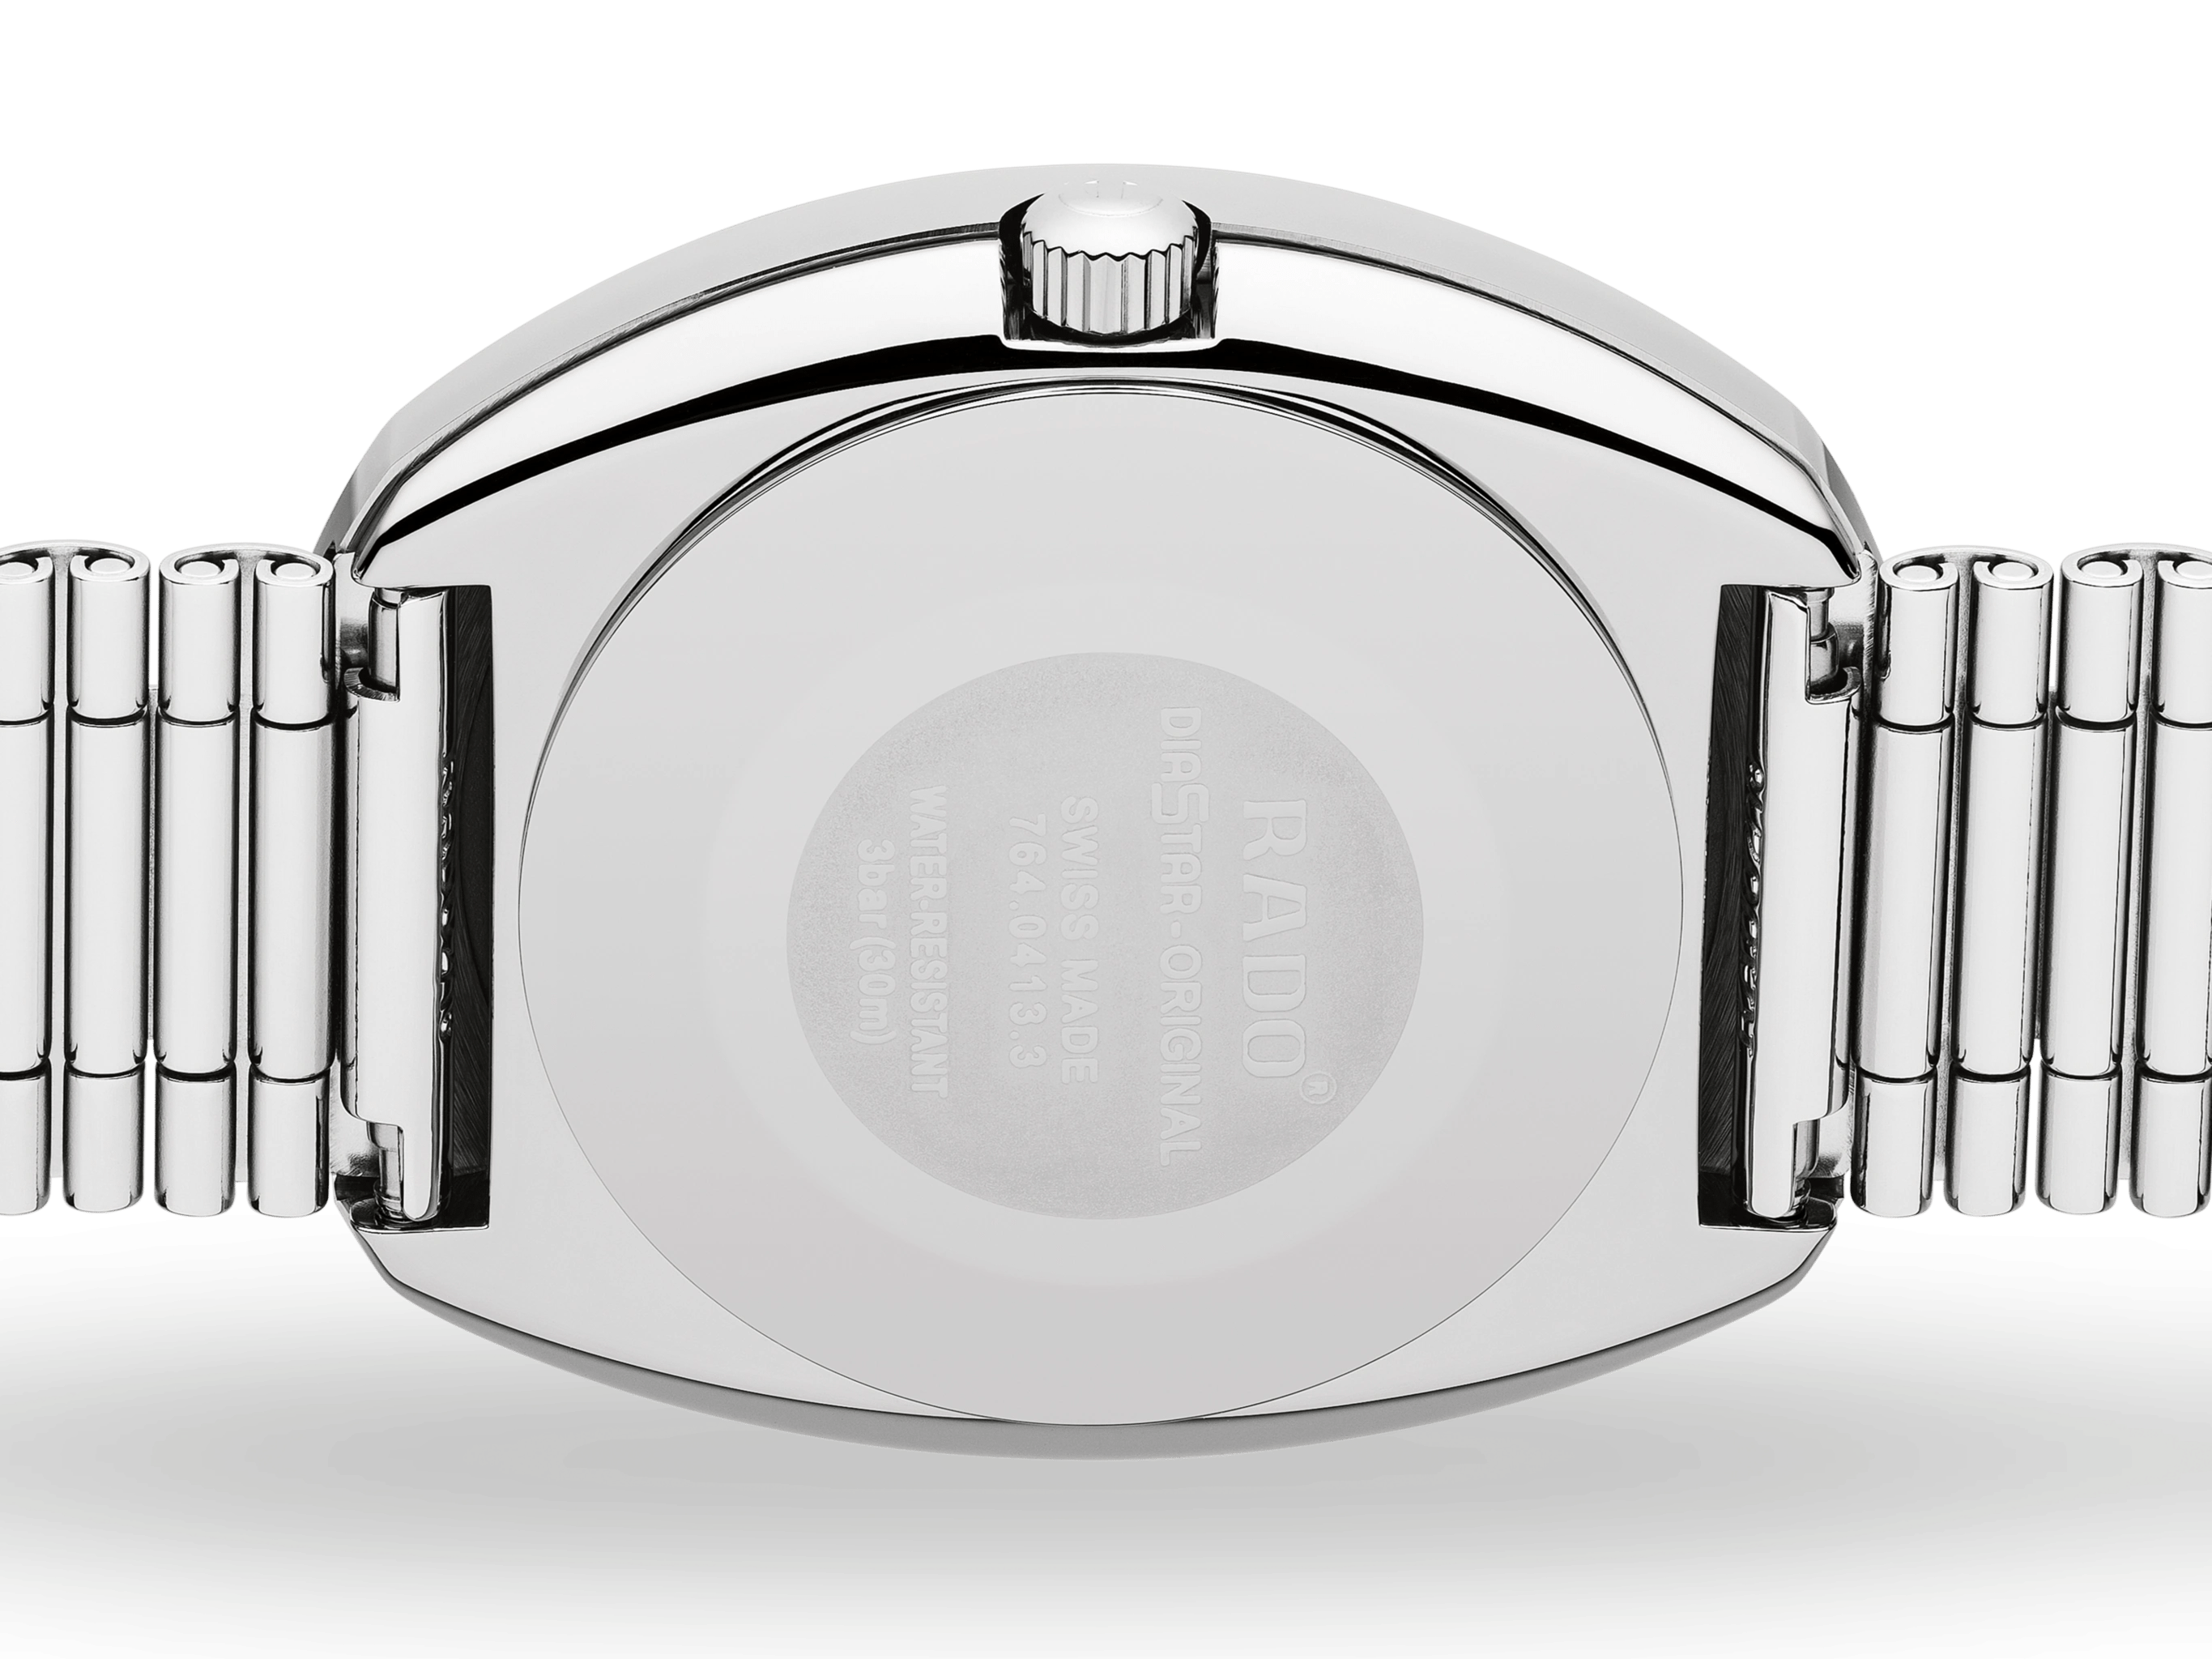 RADO The Original Quartz 35.1mm Silver Men's Watch R12391103